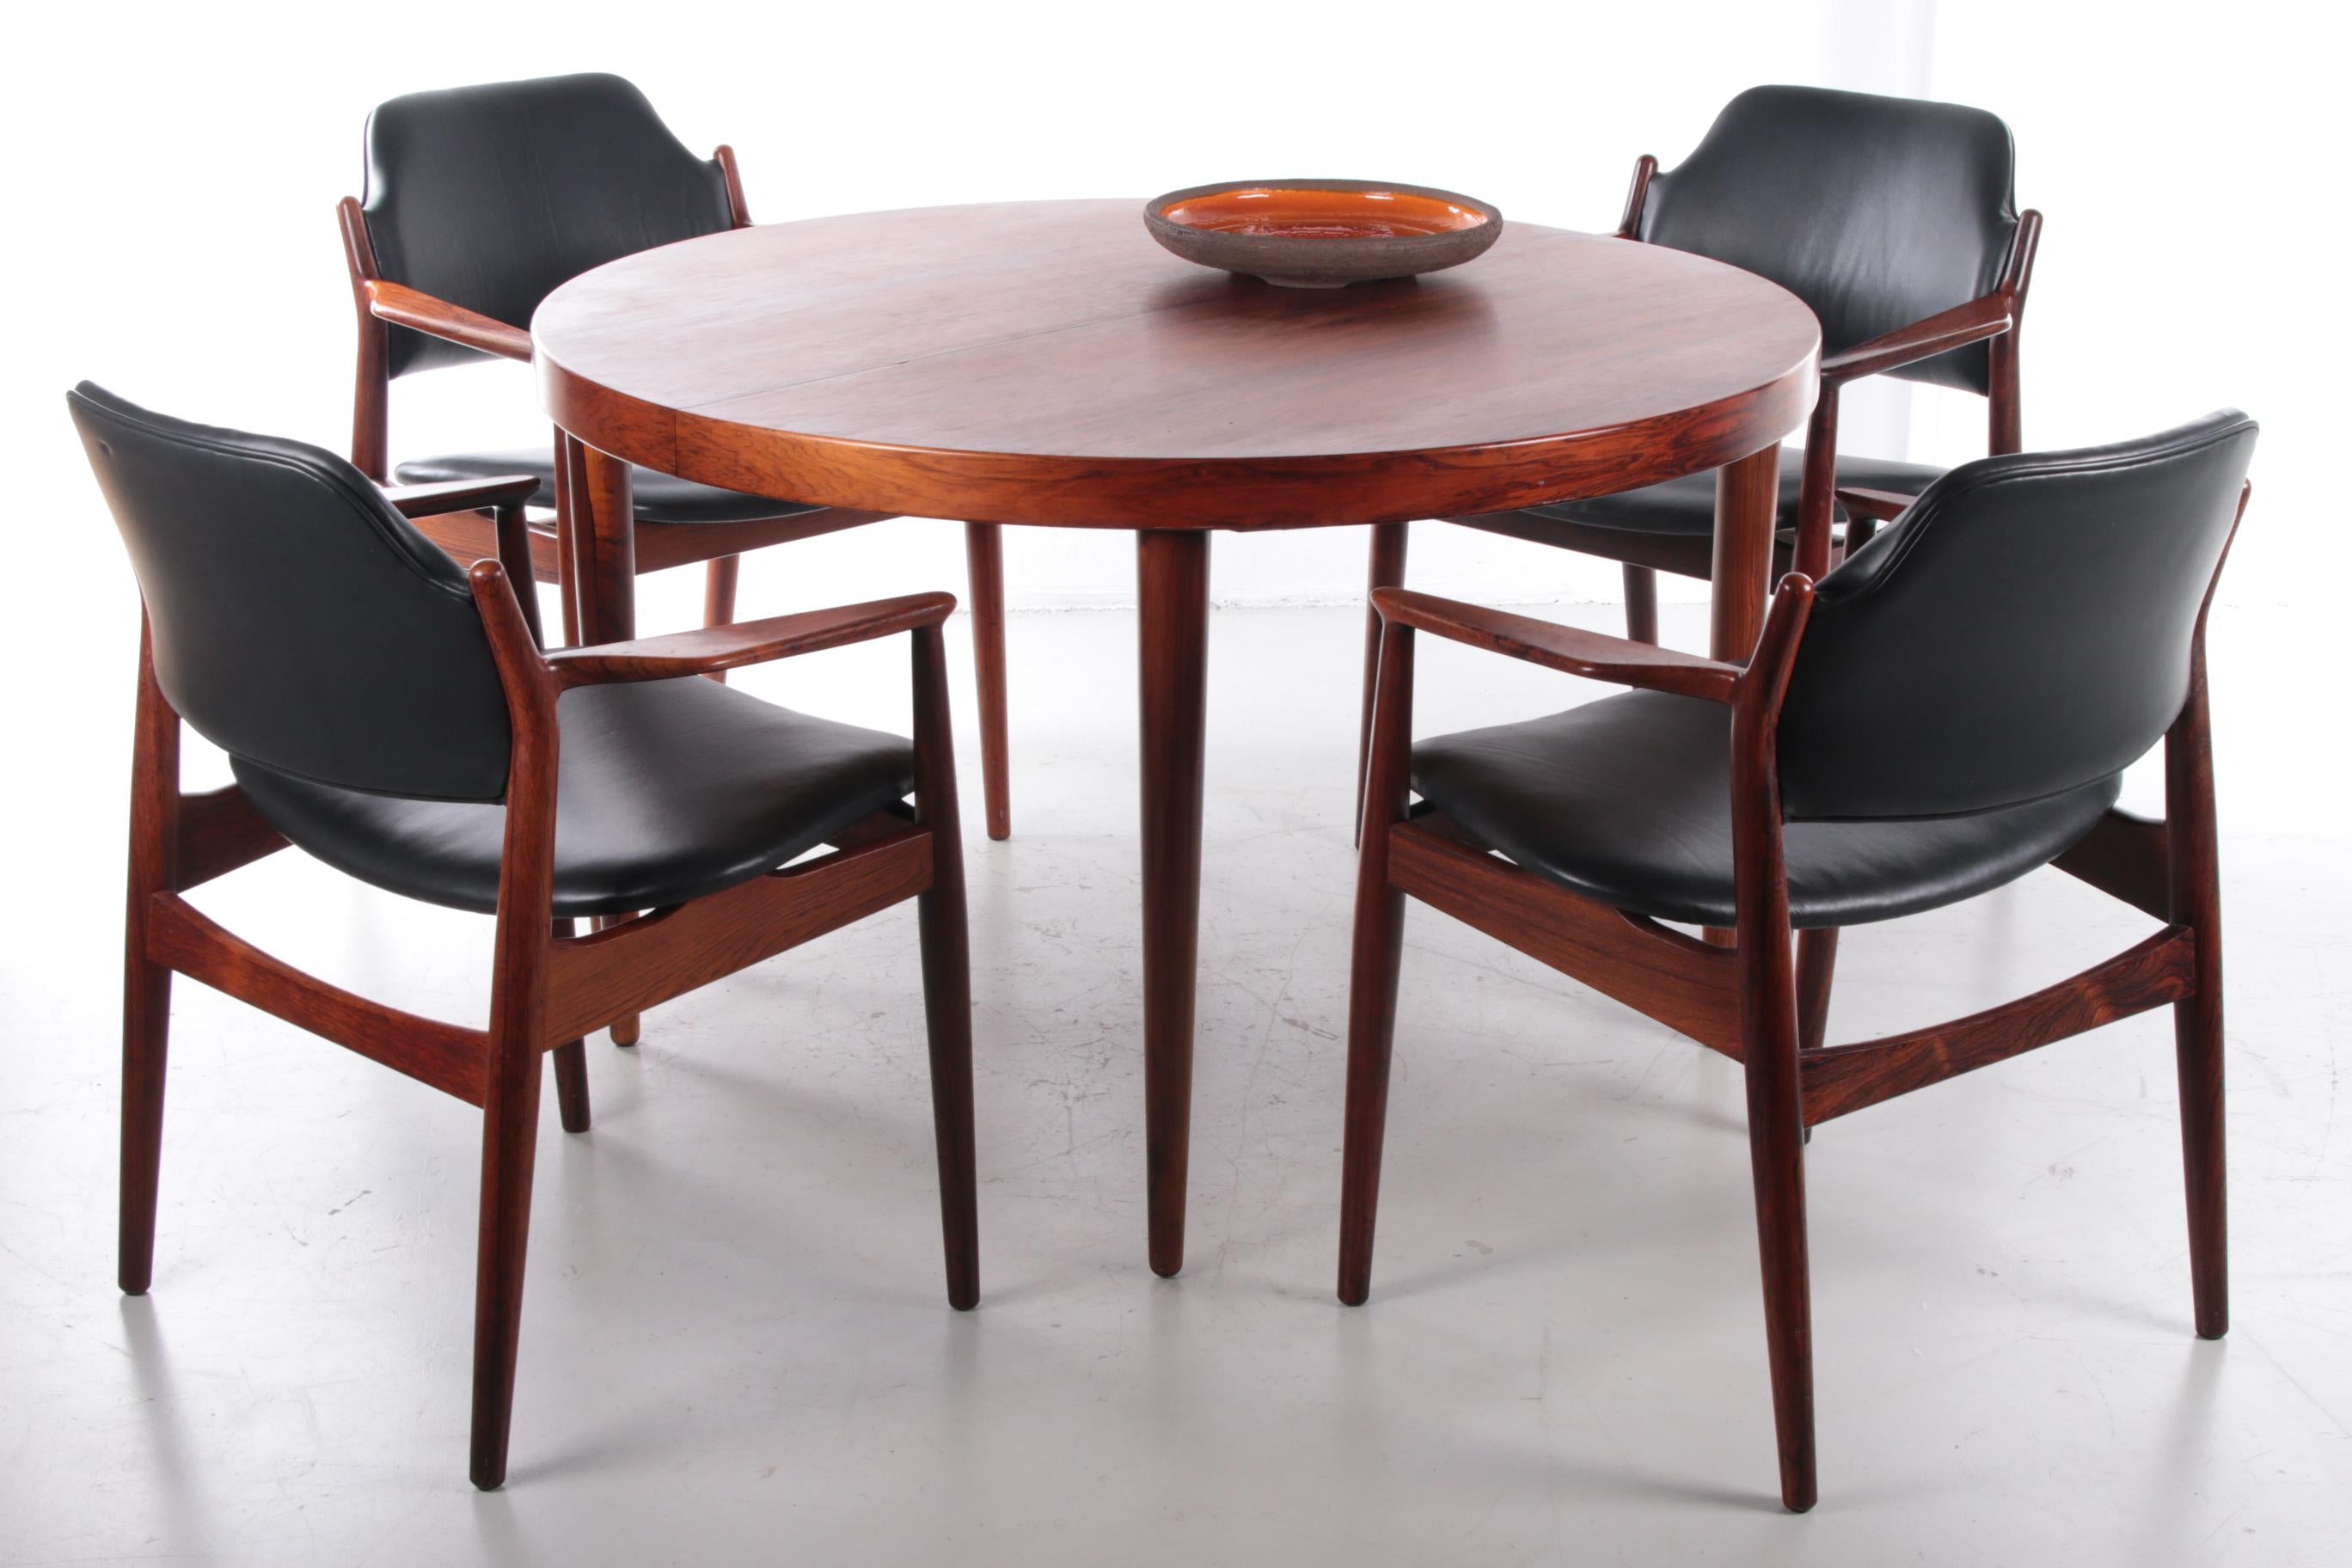 Dies ist ein schöner Sessel aus dunklem Holz und Teak, entworfen von Arne Vodder für Sibast. Dieser wunderbare Sessel ist aus massivem dunklem Holz mit schwarzem Leder auf Sitz und Rückenlehne gefertigt. Dieser schöne Stuhl hat einen hohen